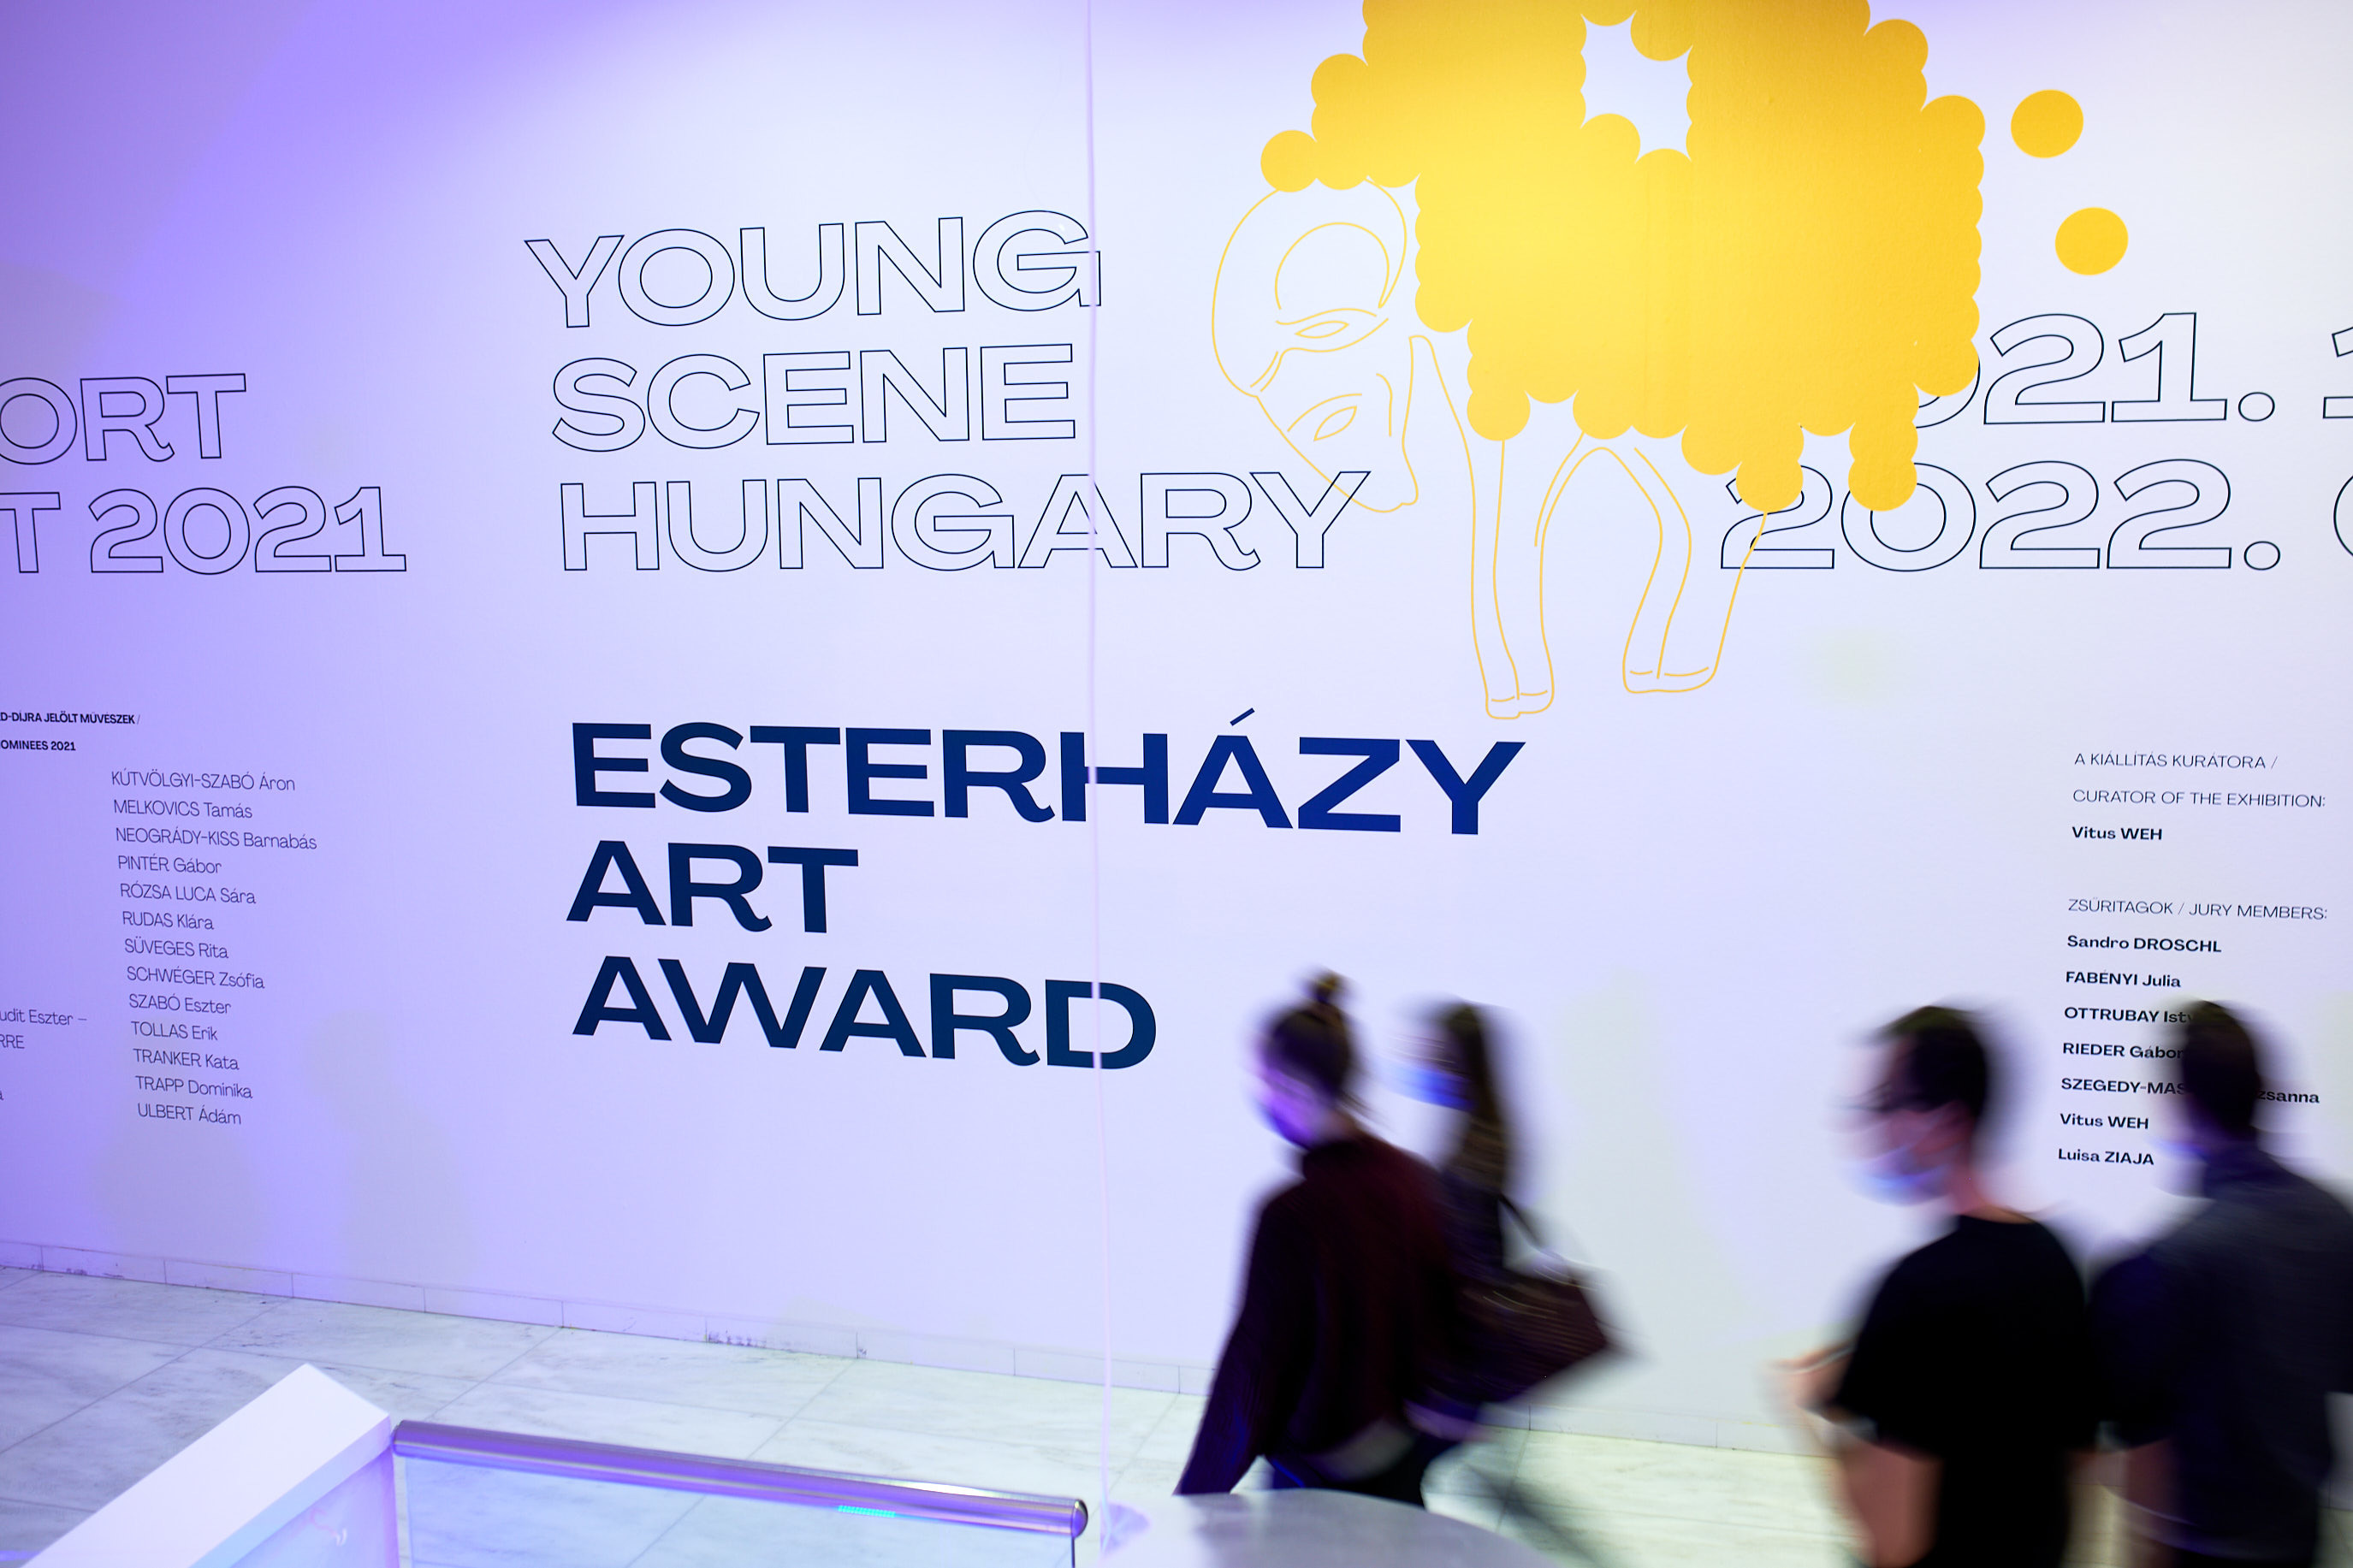 Esterhazy art award c vegel daniel